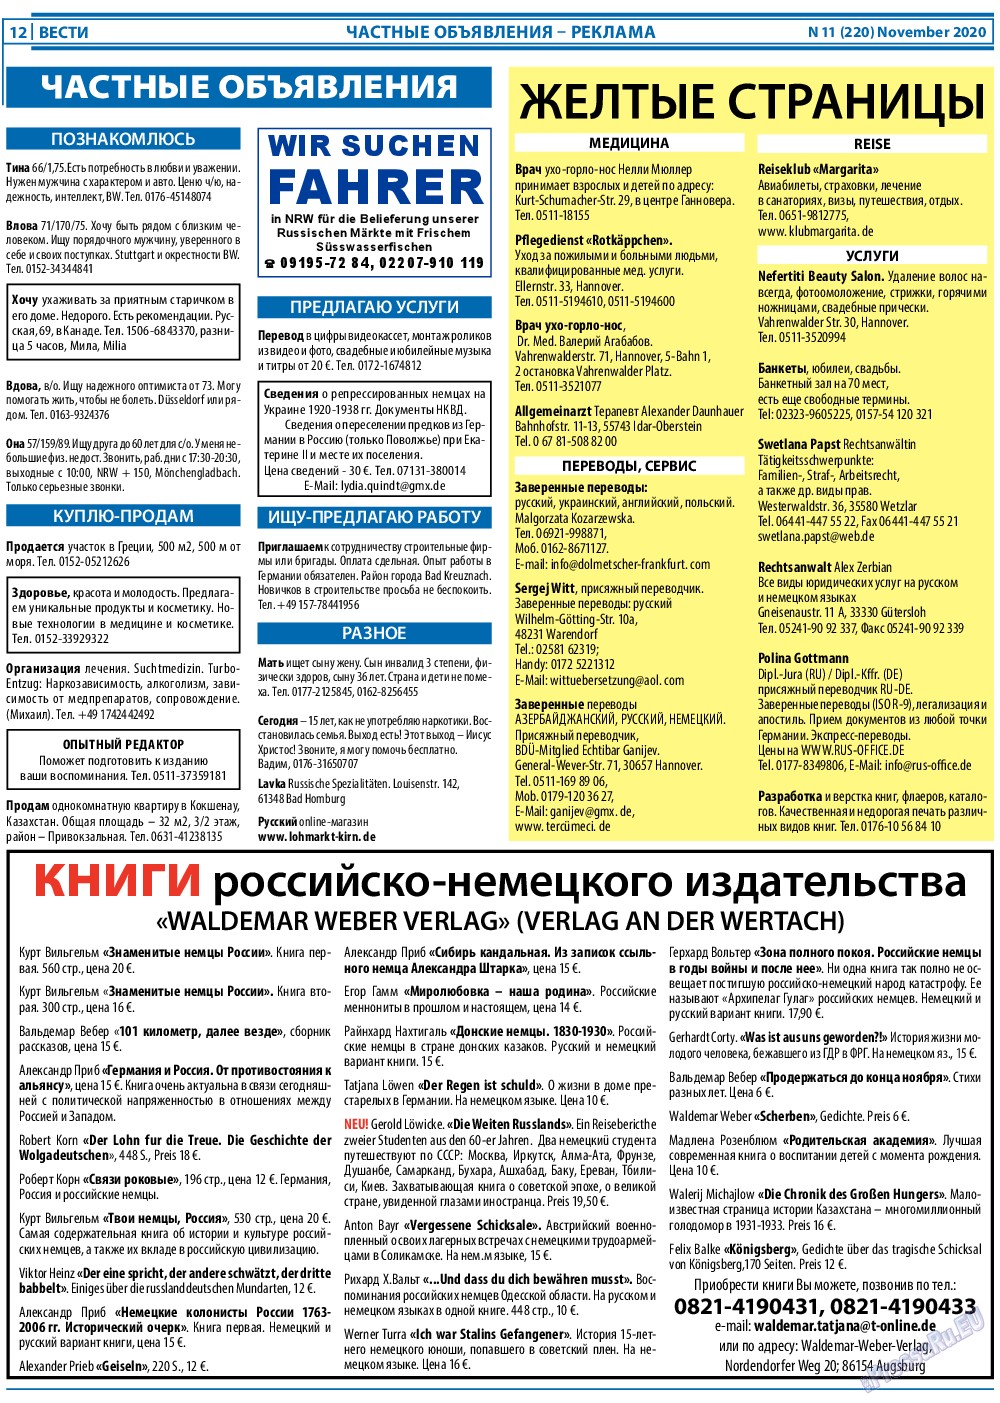 Вести, газета. 2020 №11 стр.12